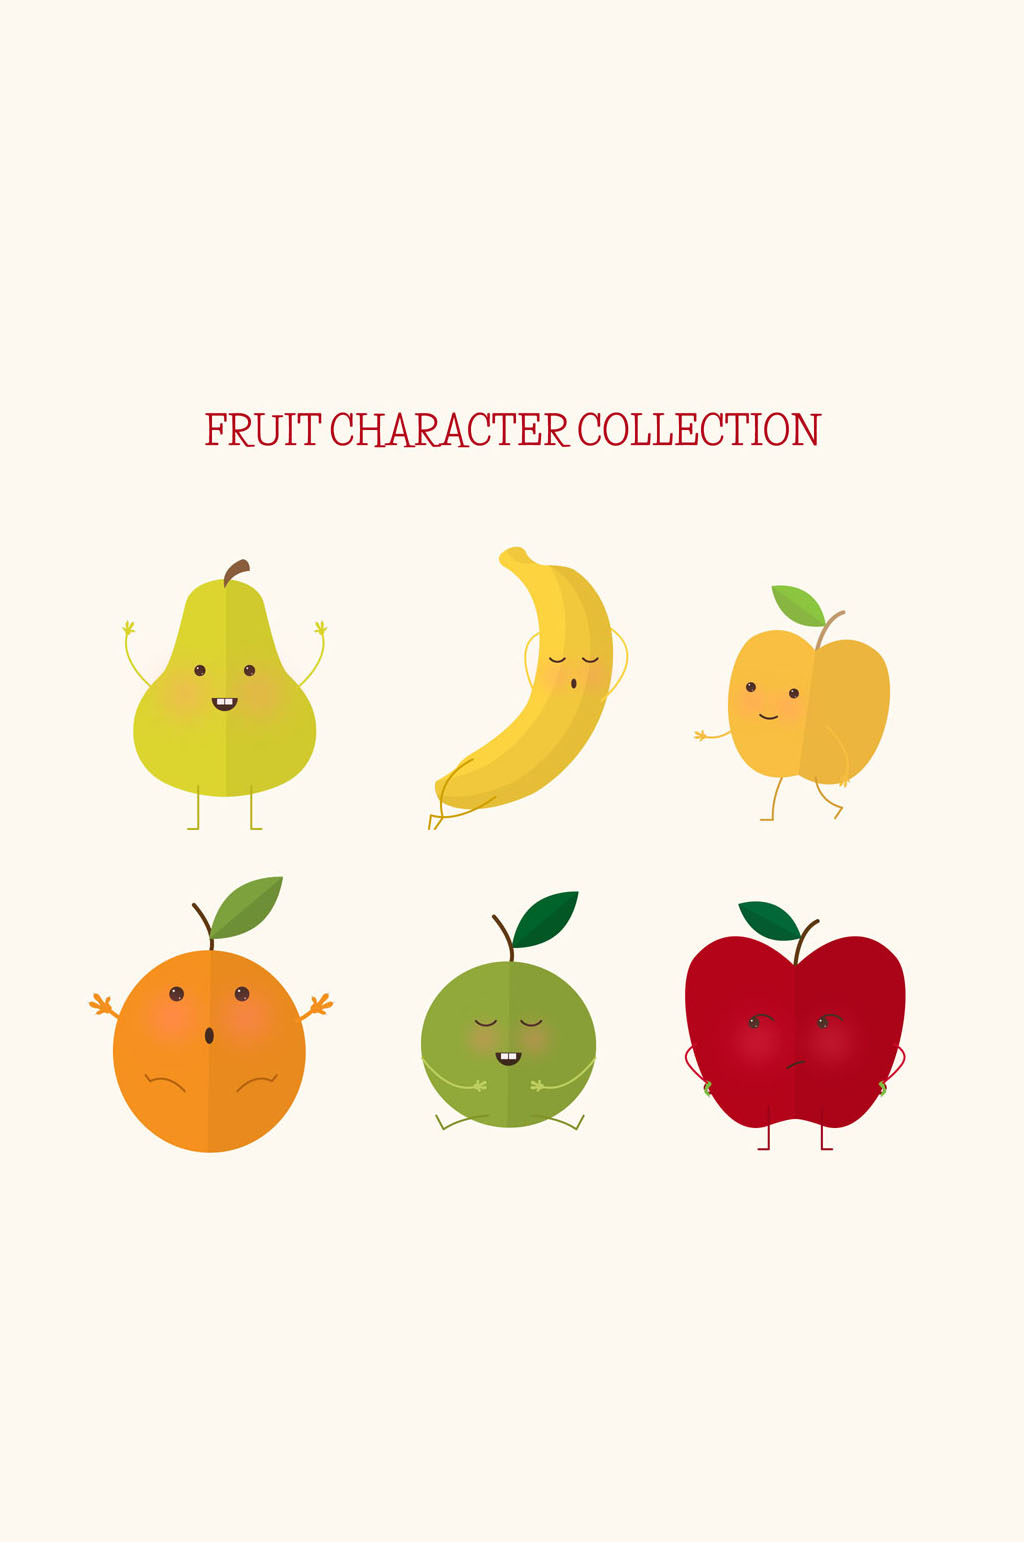 6款扁平化表情水果设计矢量图